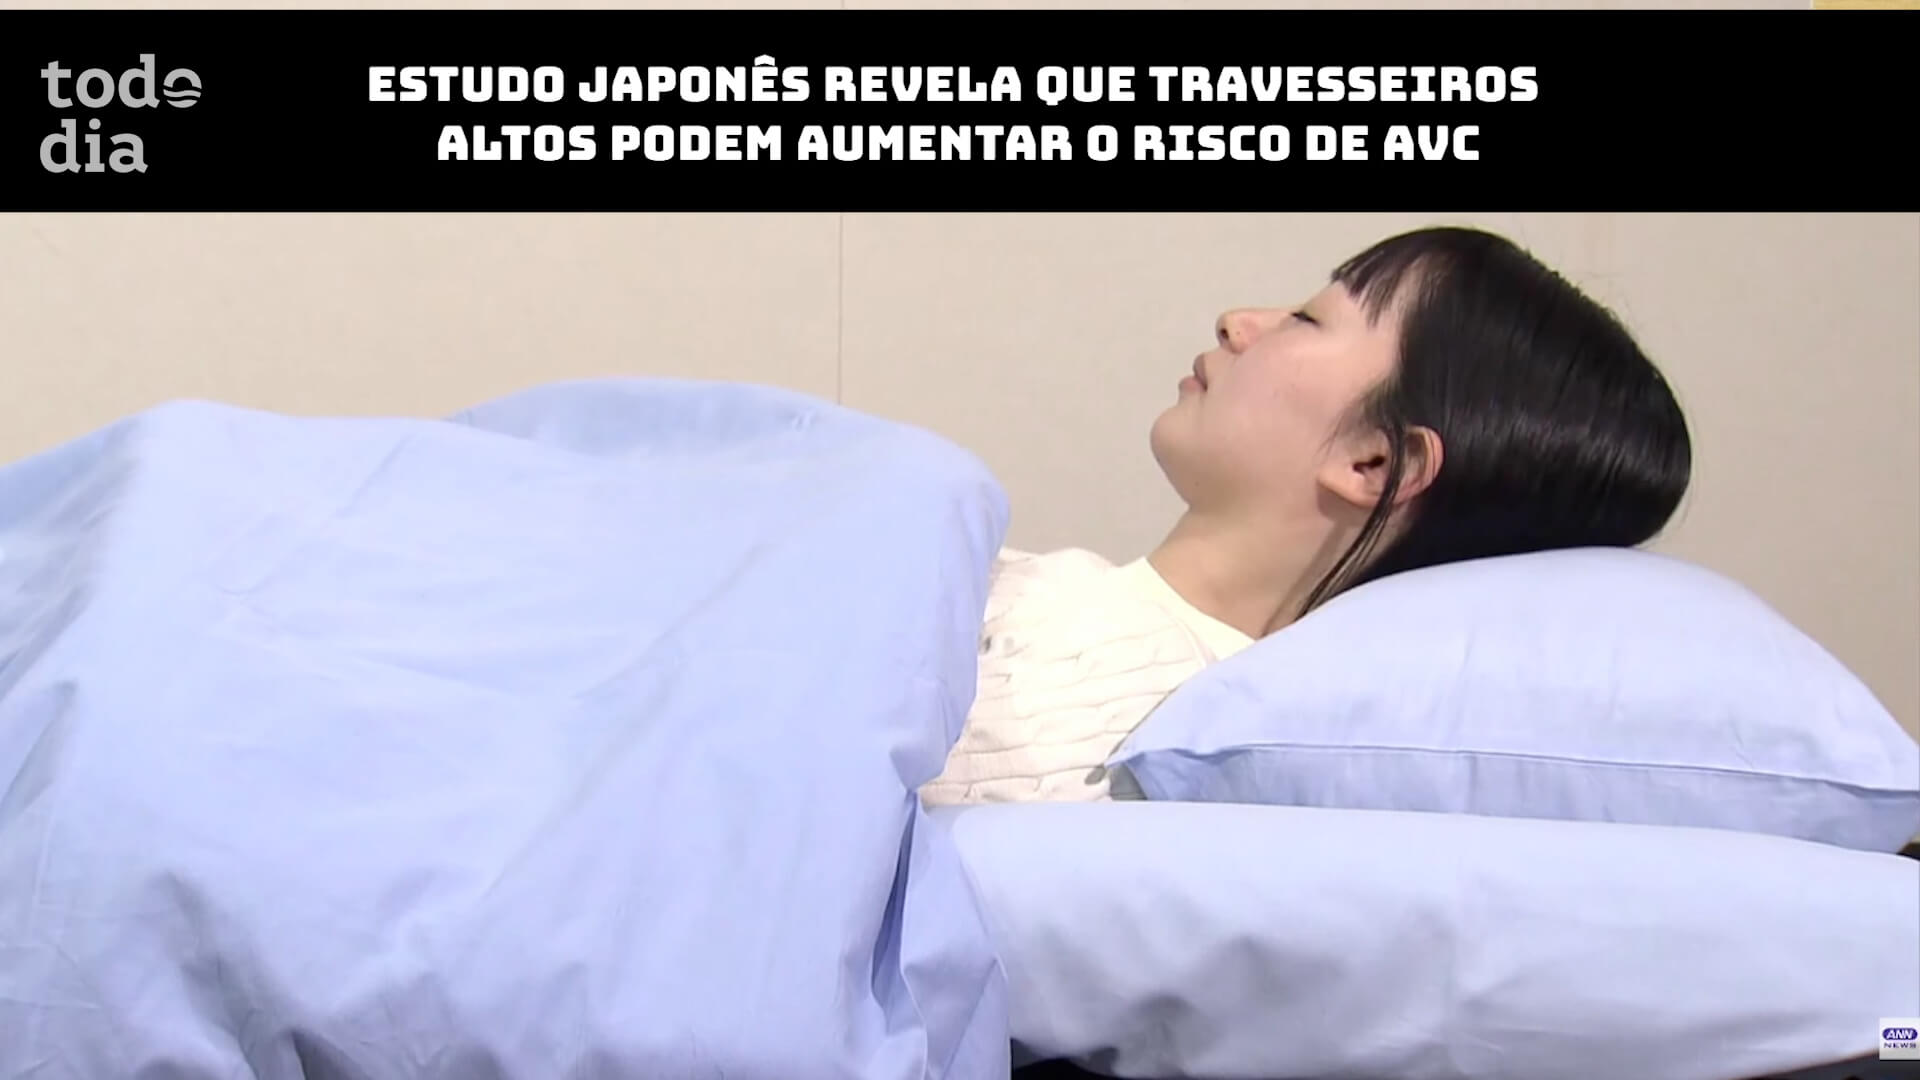 Estudo japonês revela que travesseiros altos podem aumentar o risco de AVC